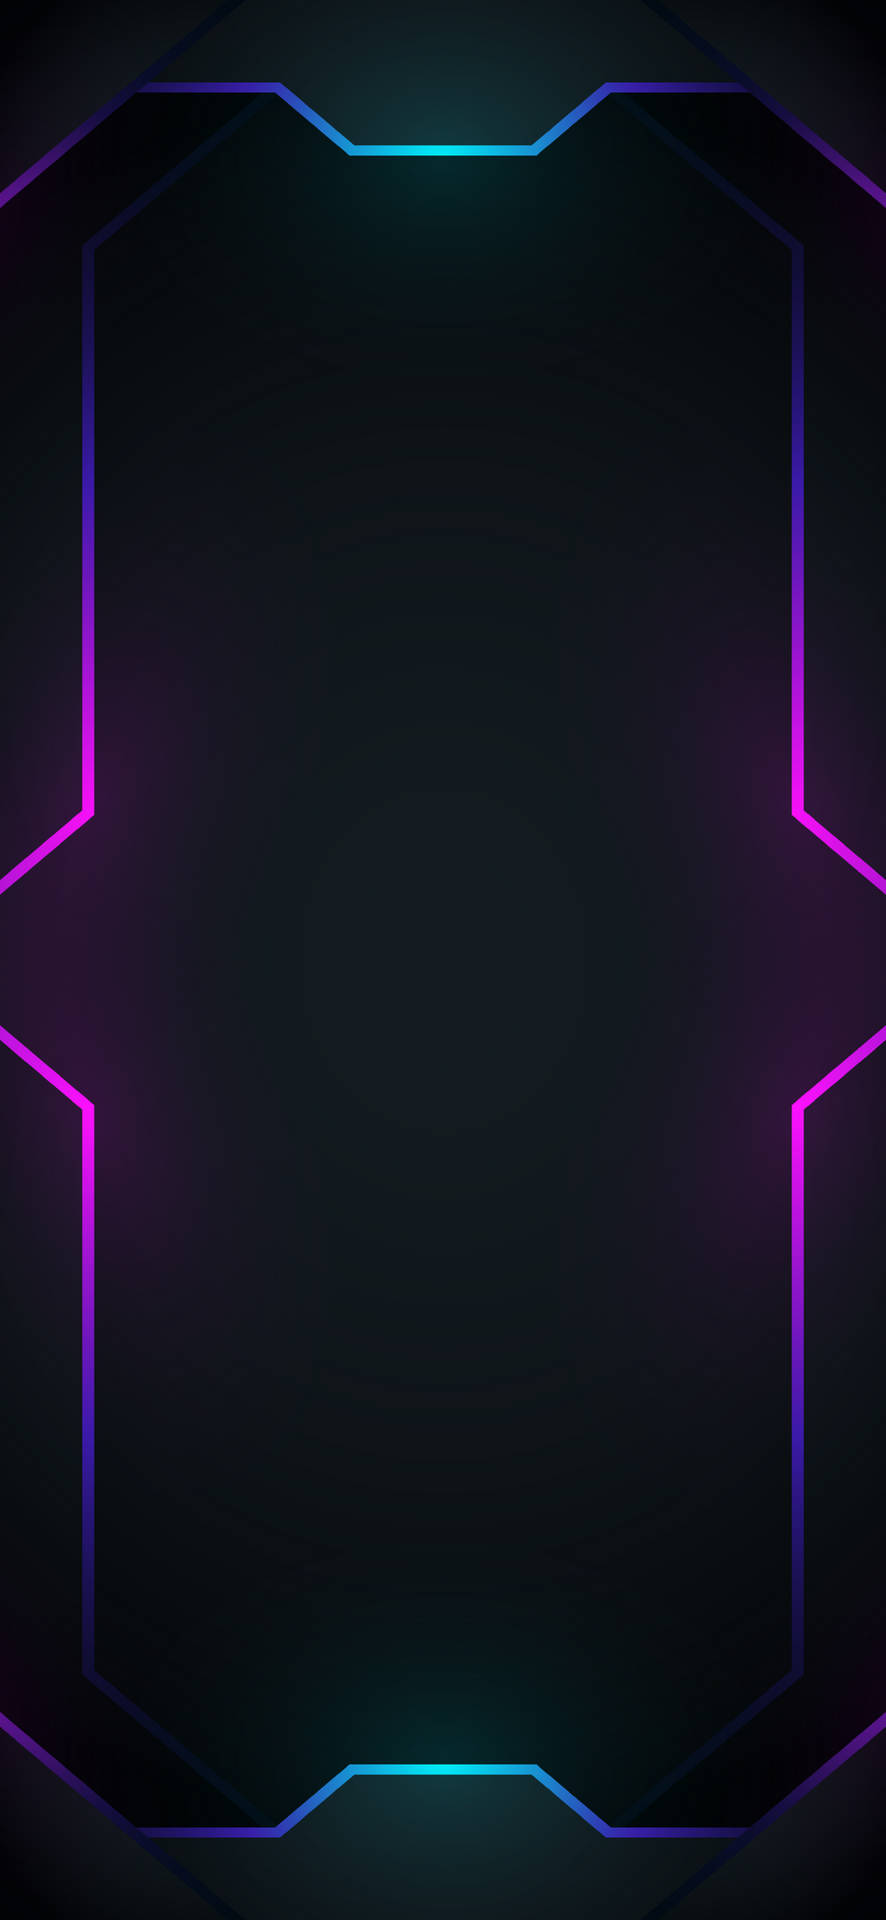 Download 4k Neon iPhone Geometric Lights Wallpaper